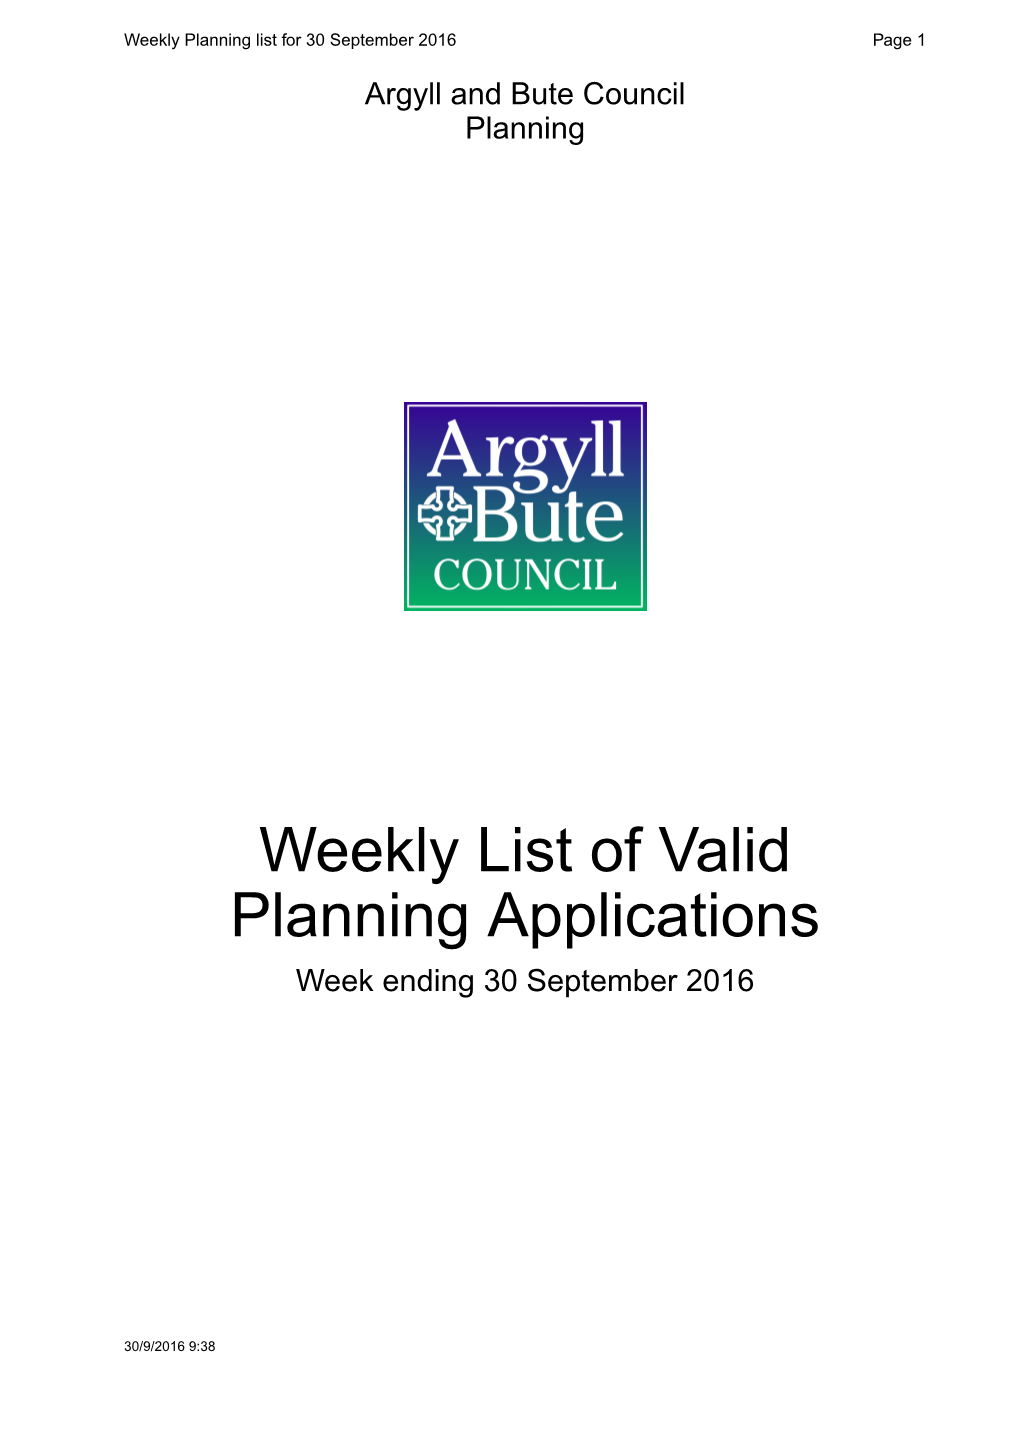 Weekly List of Valid Planning Applications Week Ending 30 September 2016